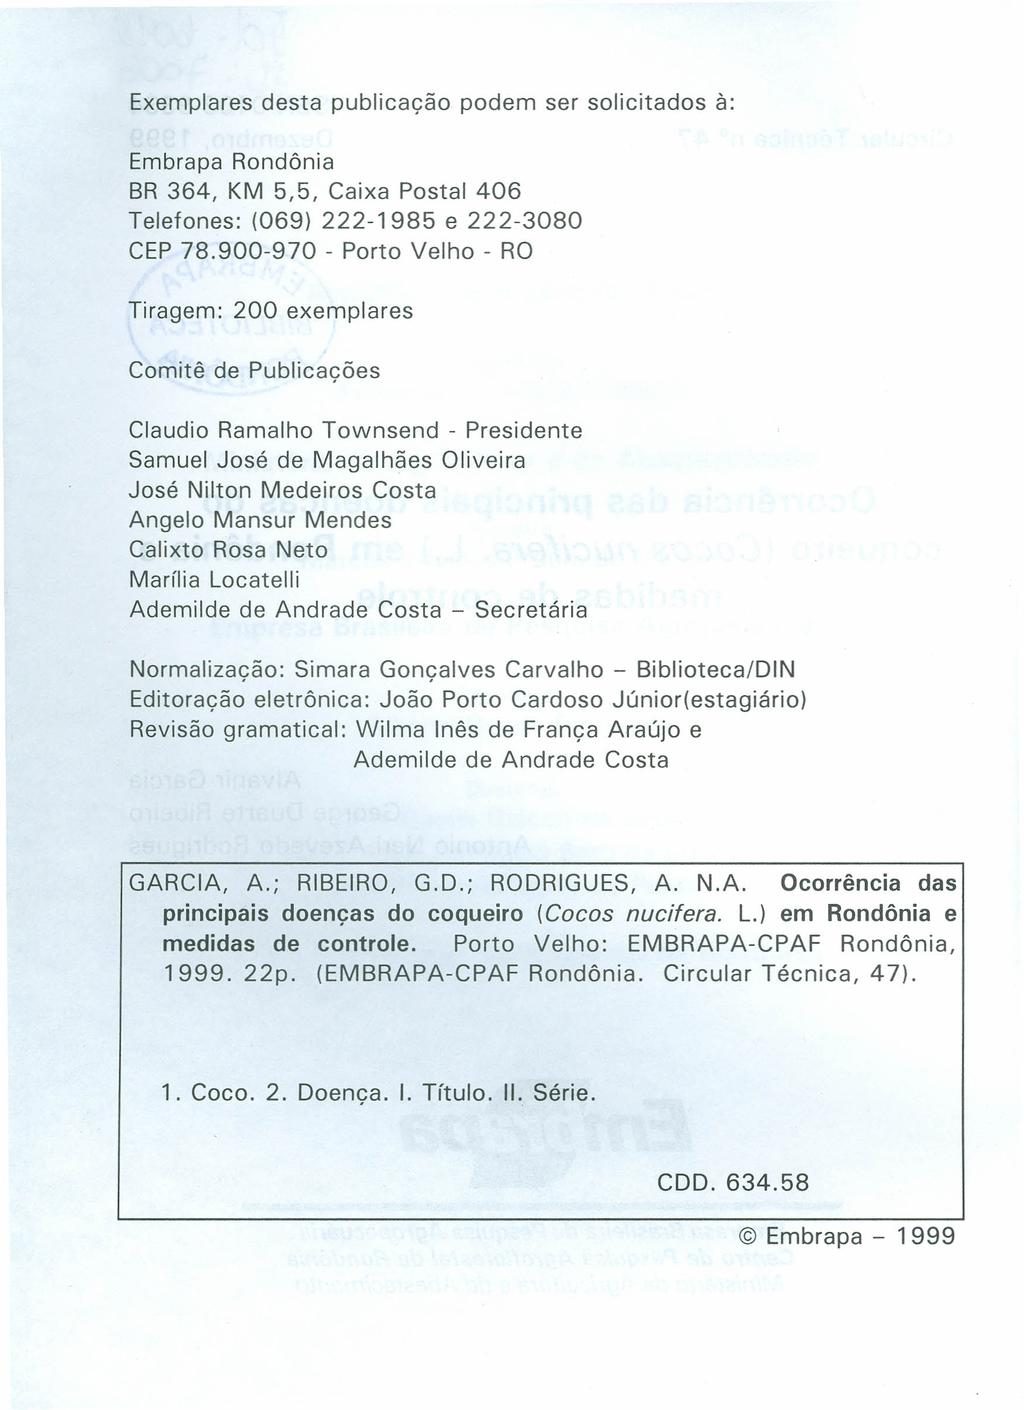 Exemplares desta publicação podem ser solicitados à: Embrapa Rondônia BR 364, KM 5,5, Caixa Postal 406 Telefones: (069) 222-1985 e 222-3080 CEP 78.